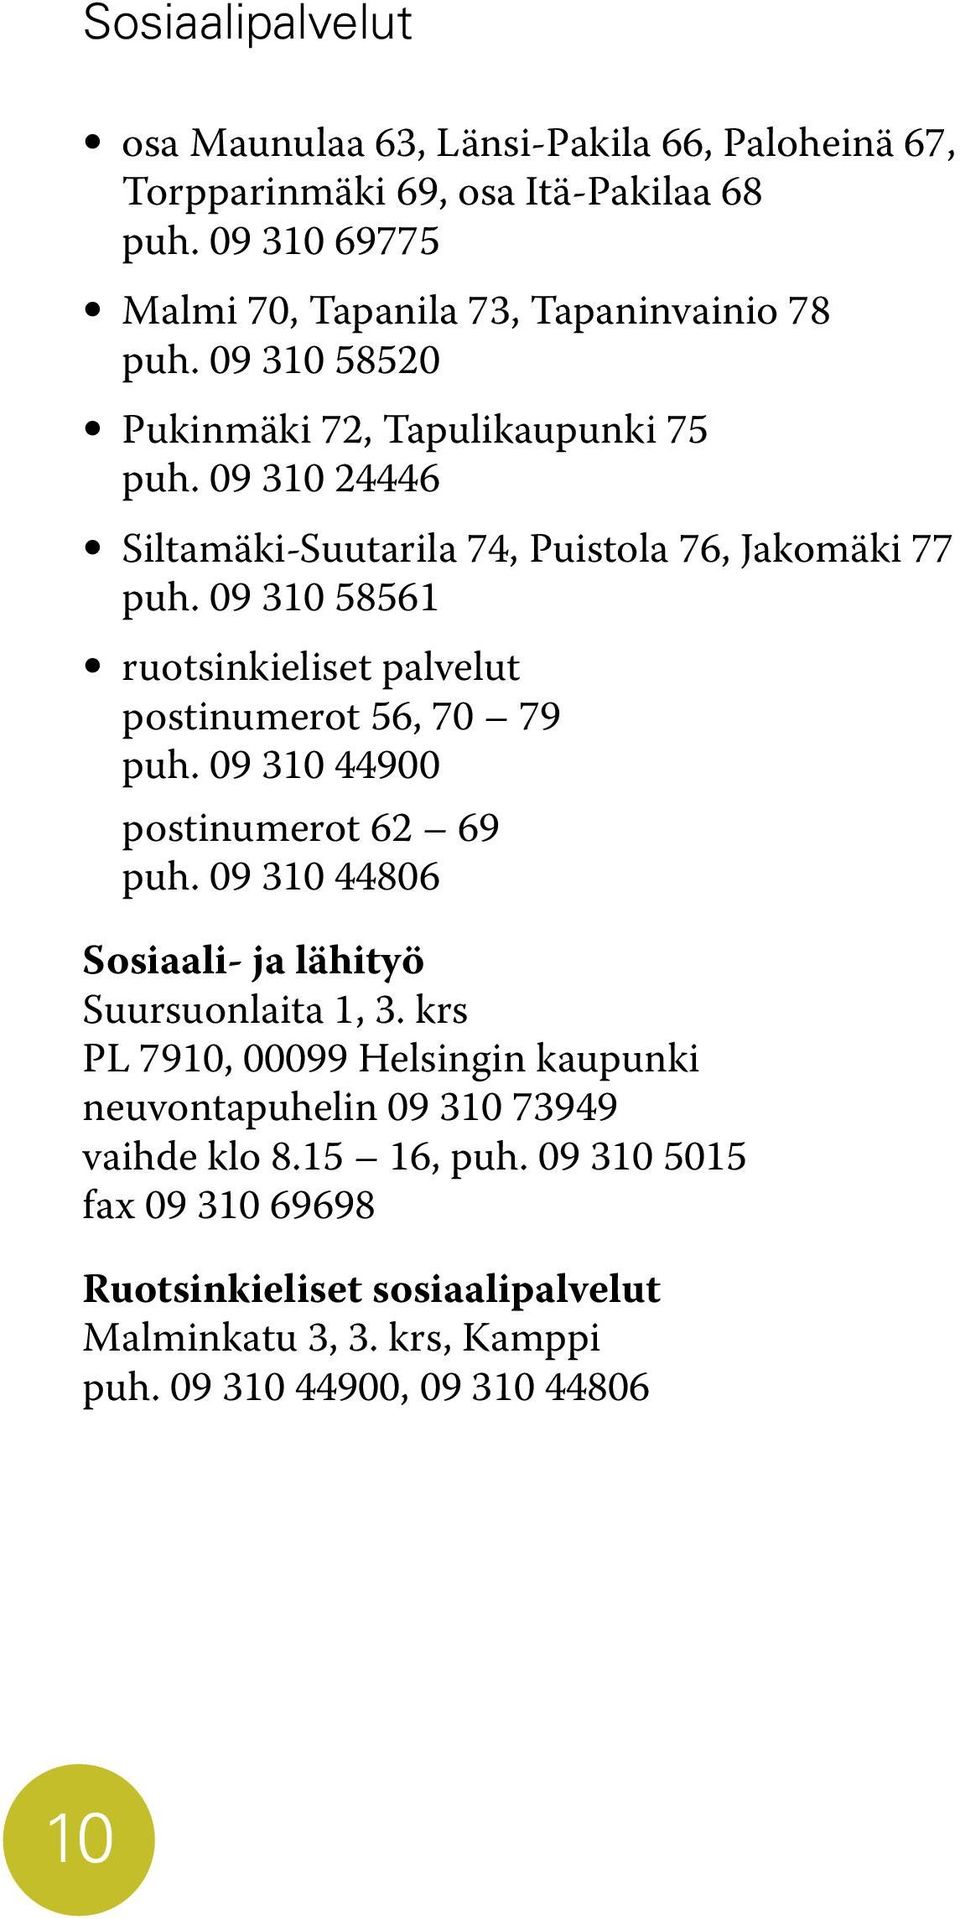 09 310 58561 ruotsinkieliset palvelut postinumerot 56, 70 79 puh. 09 310 44900 postinumerot 62 69 puh. 09 310 44806 Sosiaali- ja lähityö Suursuonlaita 1, 3.